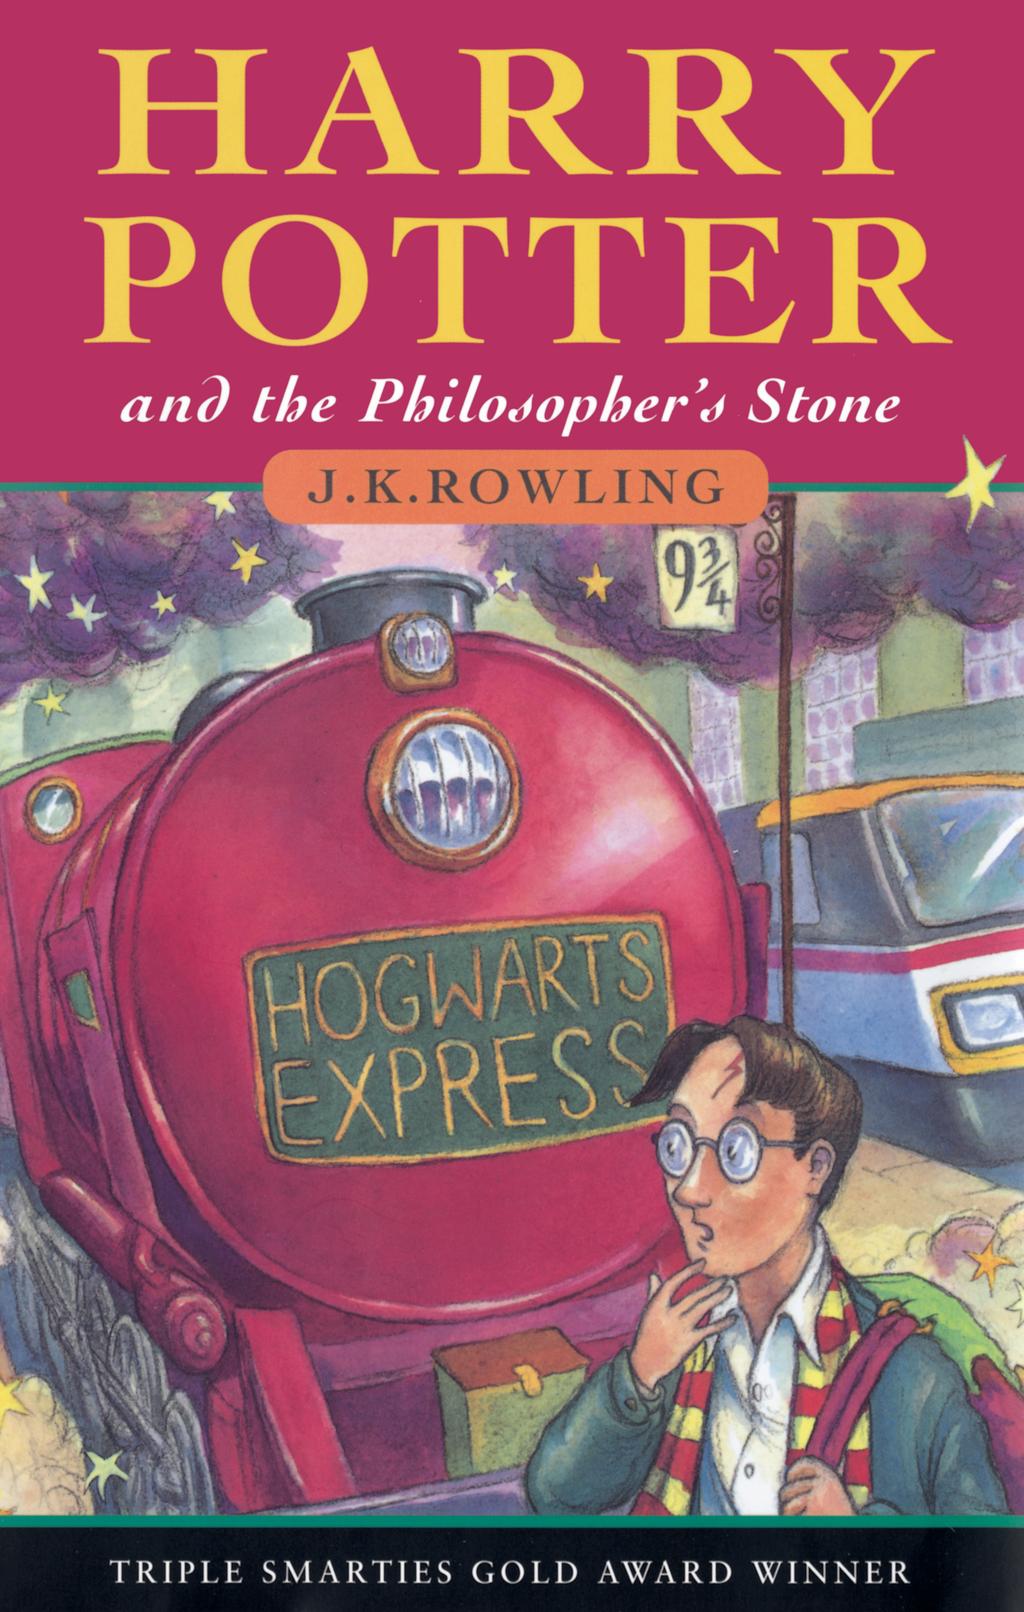 Rowling Gegevens over het boek: Het boek Harry Potter and the Philosopher s Stone is geschreven door J.K. Rowling en is in 1997 voor het eerst in Engeland uitgegeven.